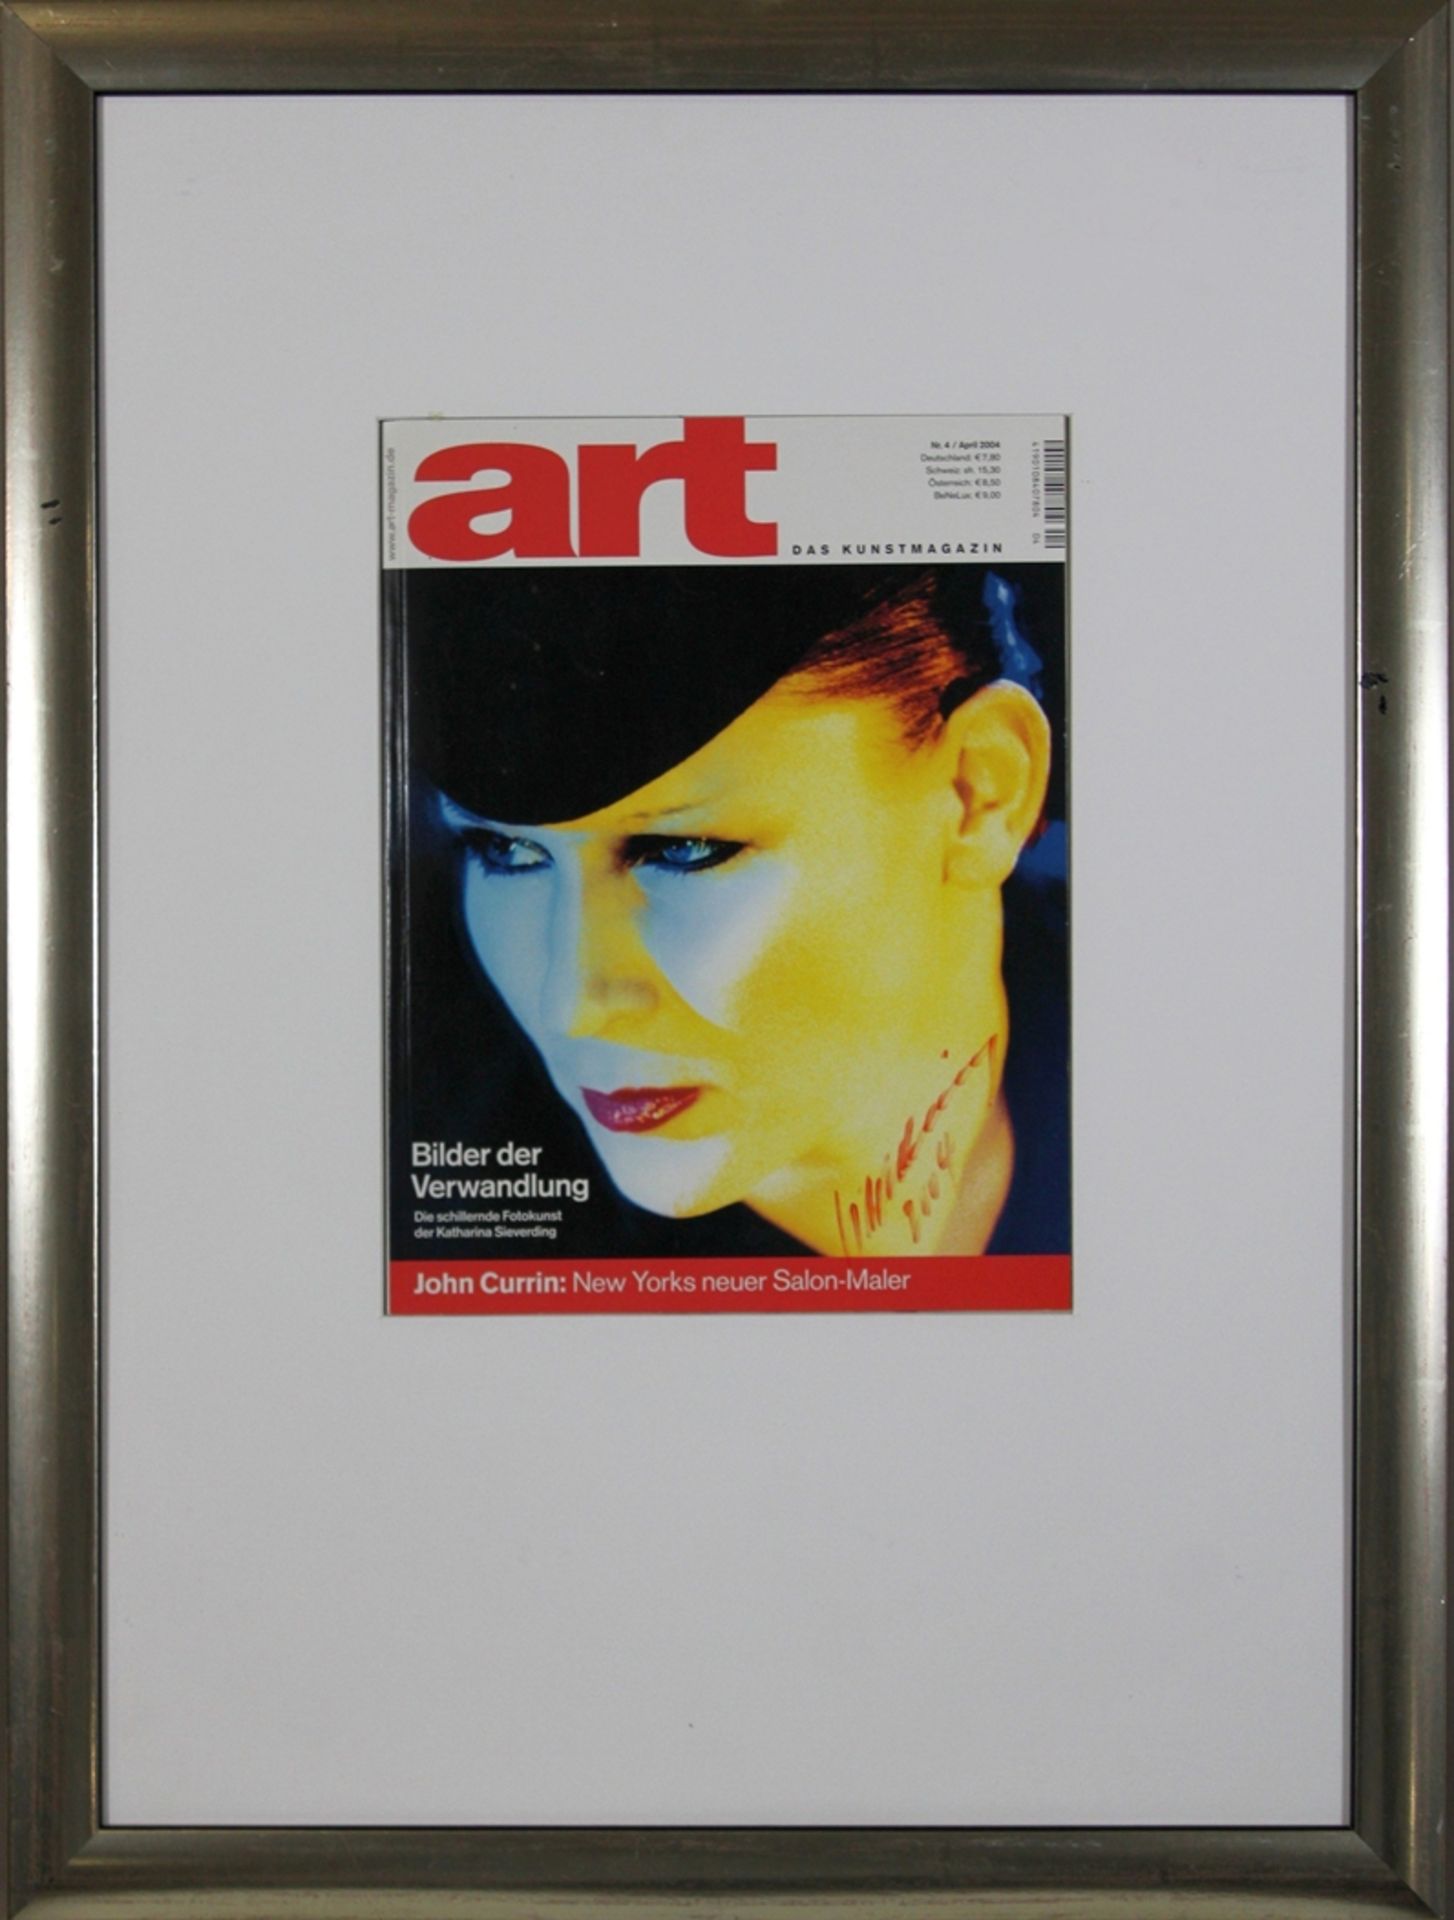 ART Magazin handsigniert von Katharina Sieverding (deutsch, geb. 1941), 2004, Maße: 28 x 22 cm, Rah - Image 2 of 3